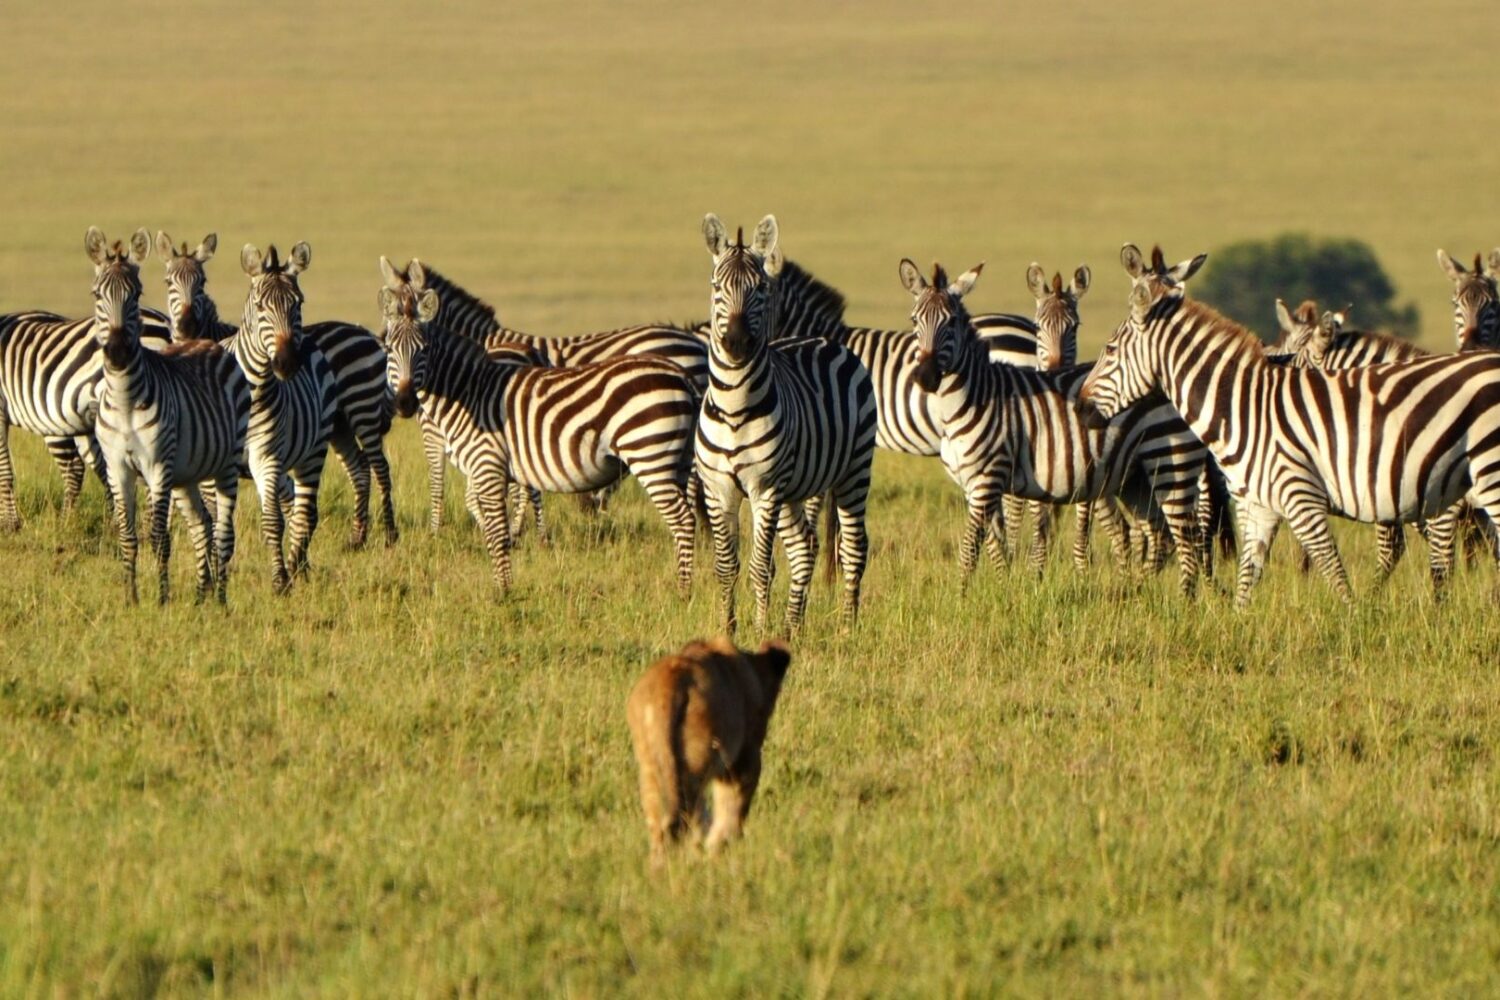 Zebras in serengeti national park